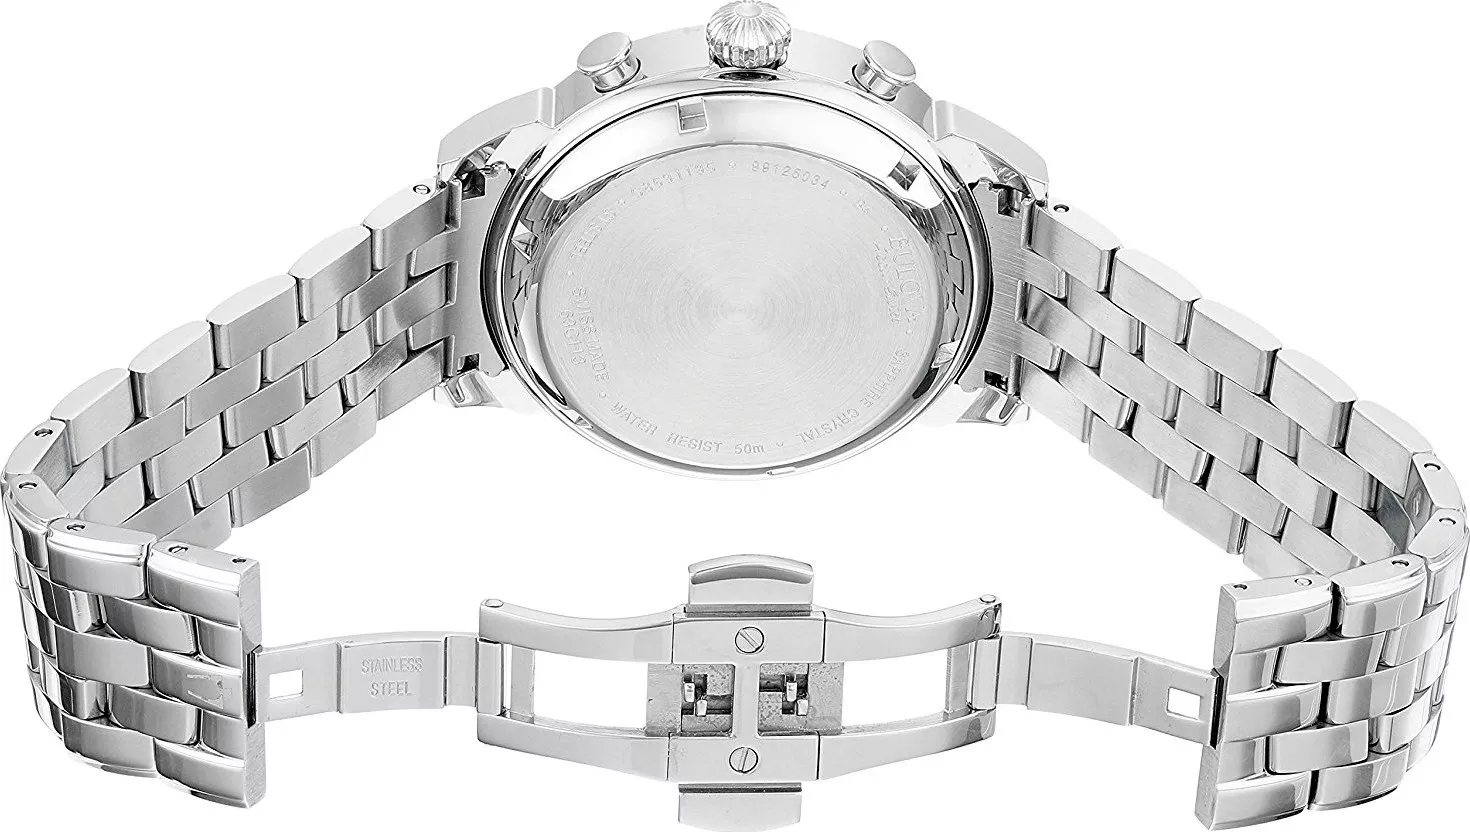 Bulova AccuSwiss Gemini Automatic Watch 42mm